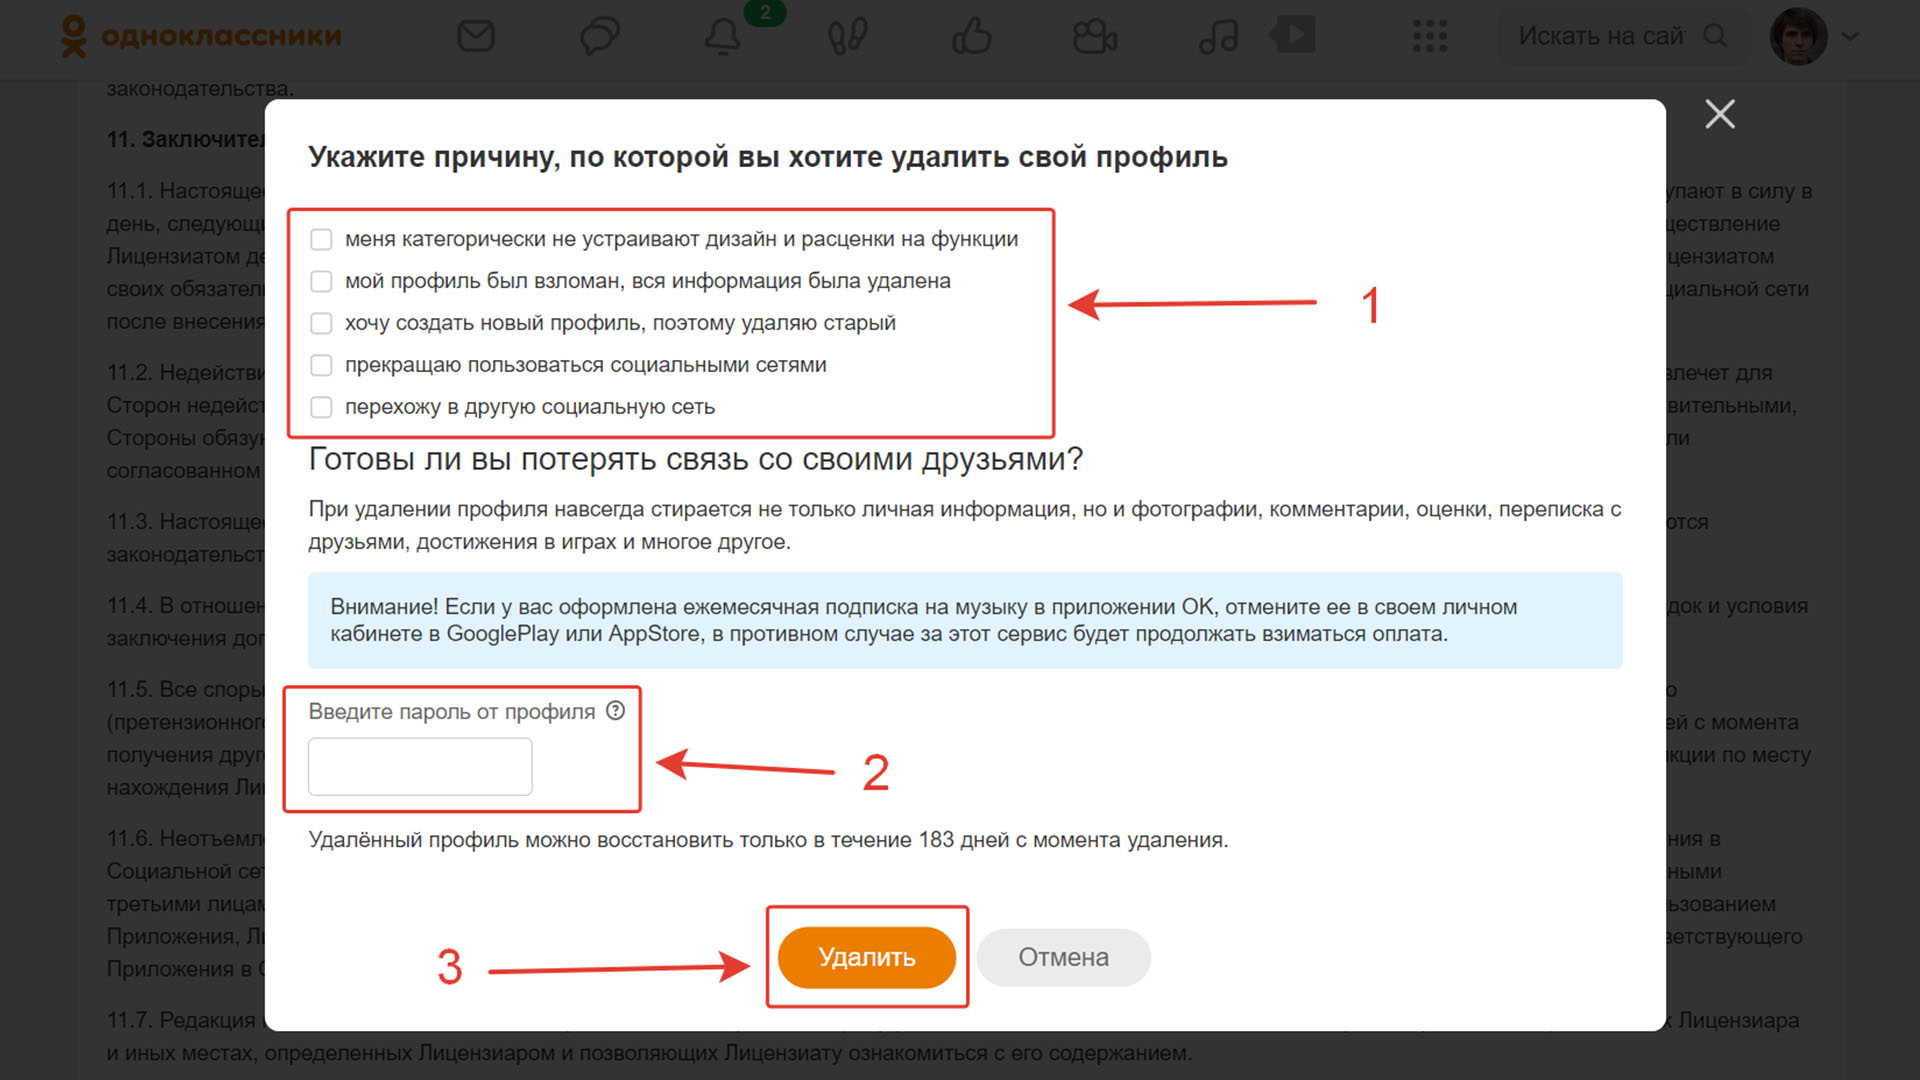 Скриншот окна удаления профиля в «Одноклассниках».